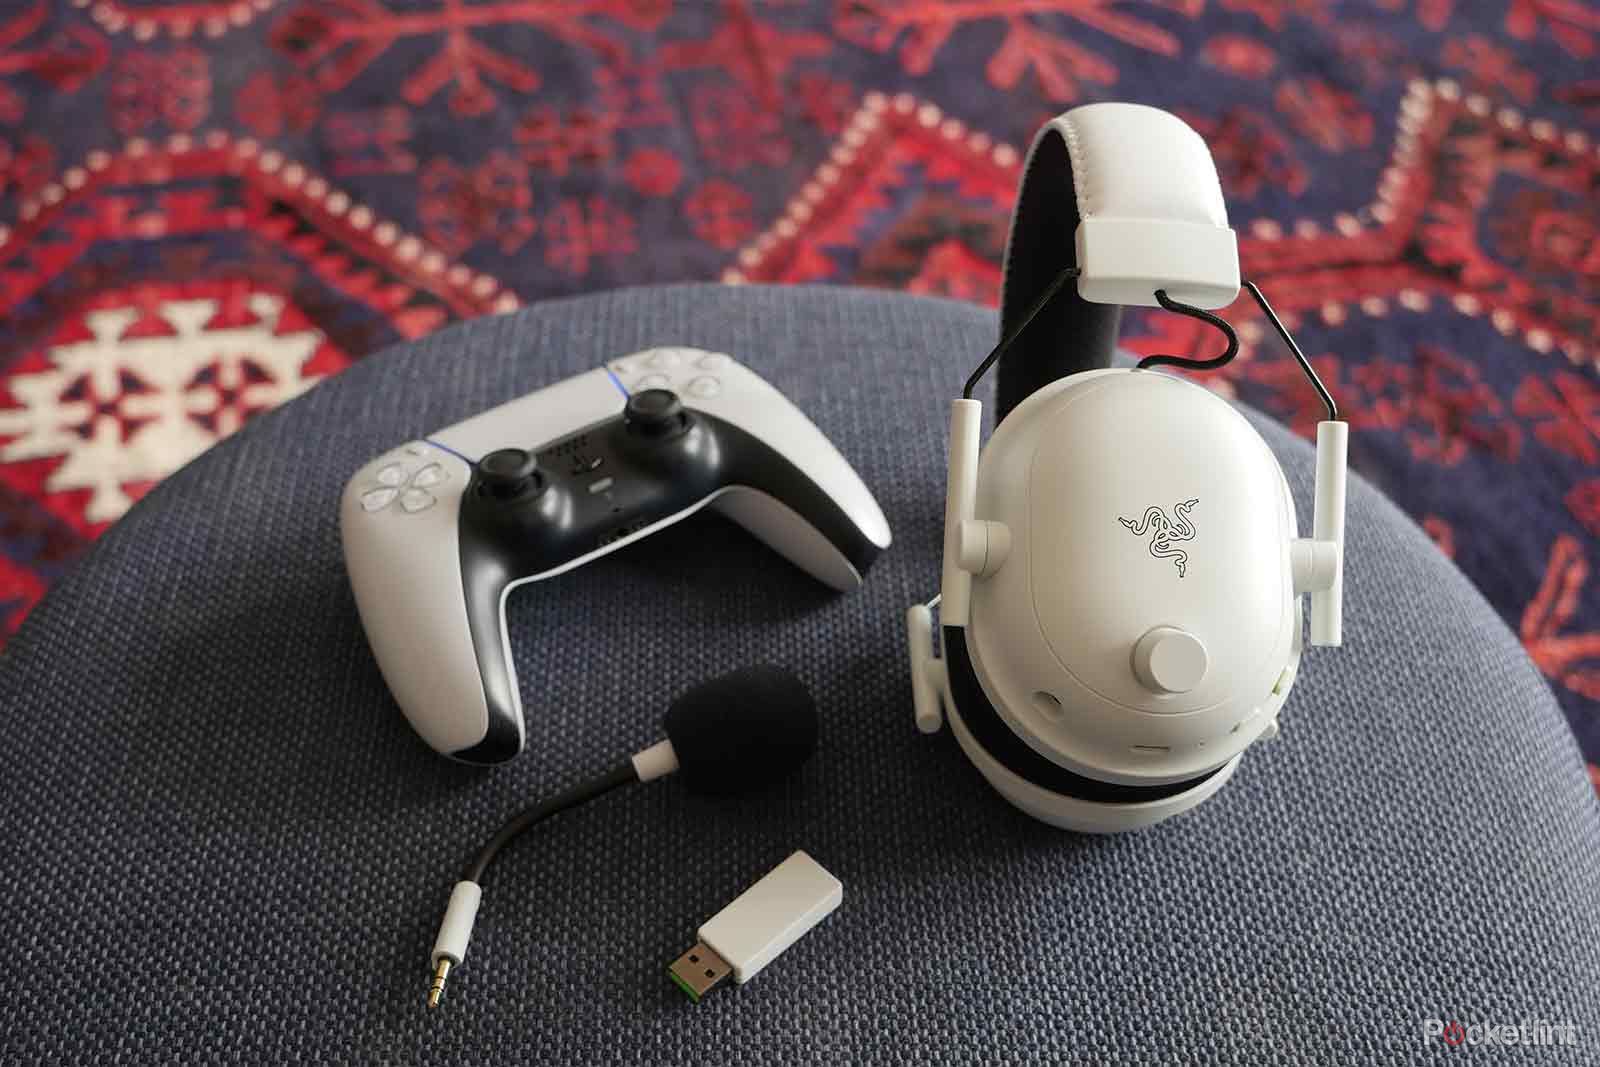 Razer BlackShark V2 Pro headset review: White and light